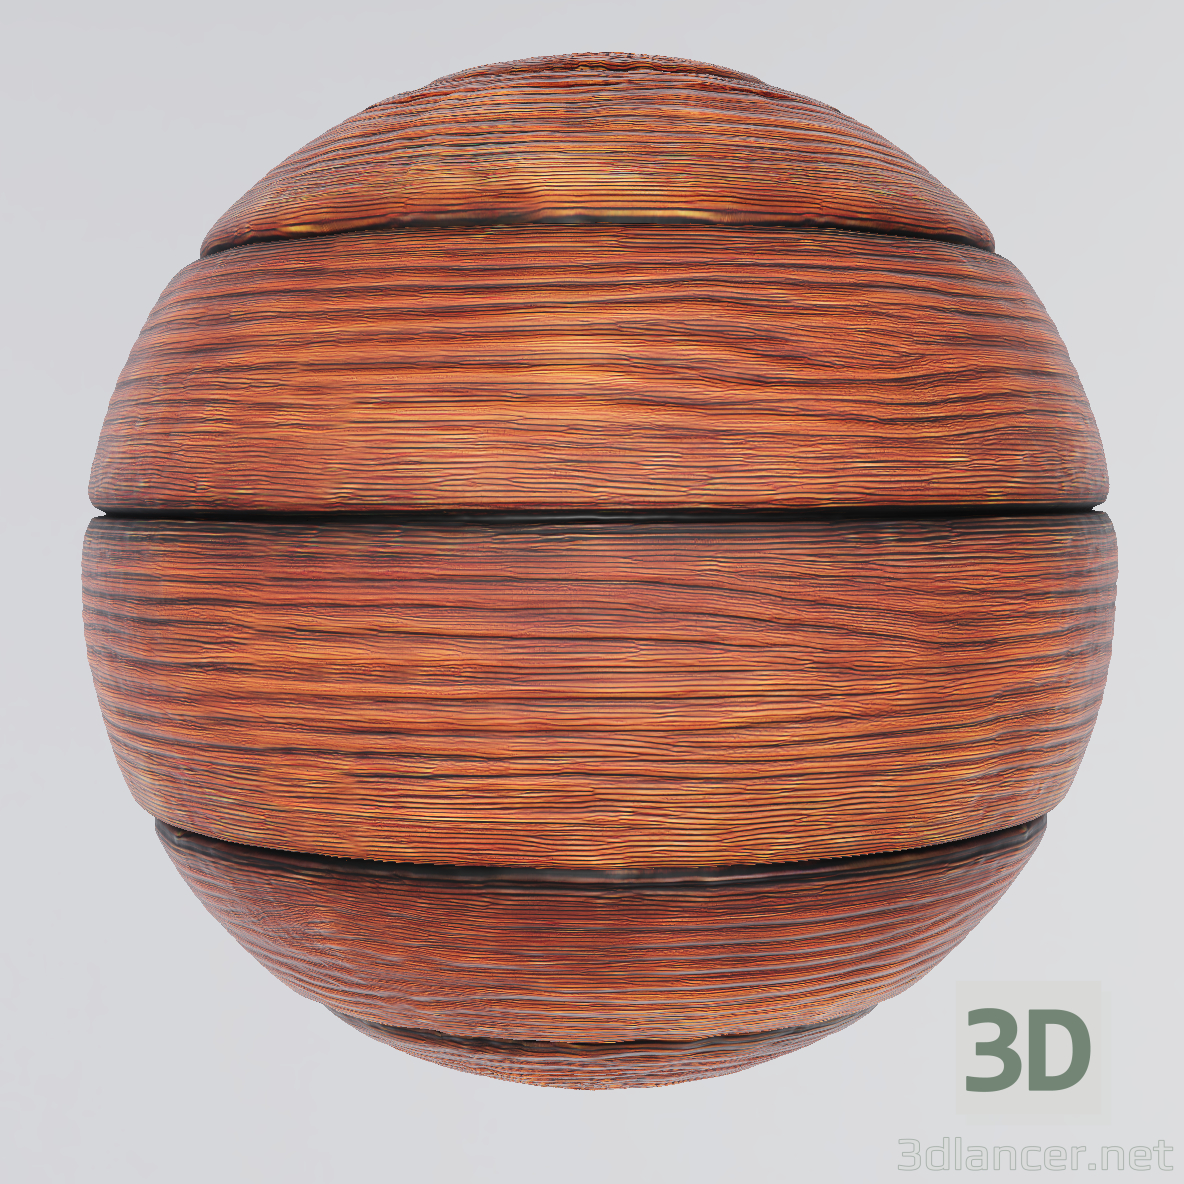 अधिकतम खरीदने के लिए 3 डी बनावट लकड़ी का तख्ता 3